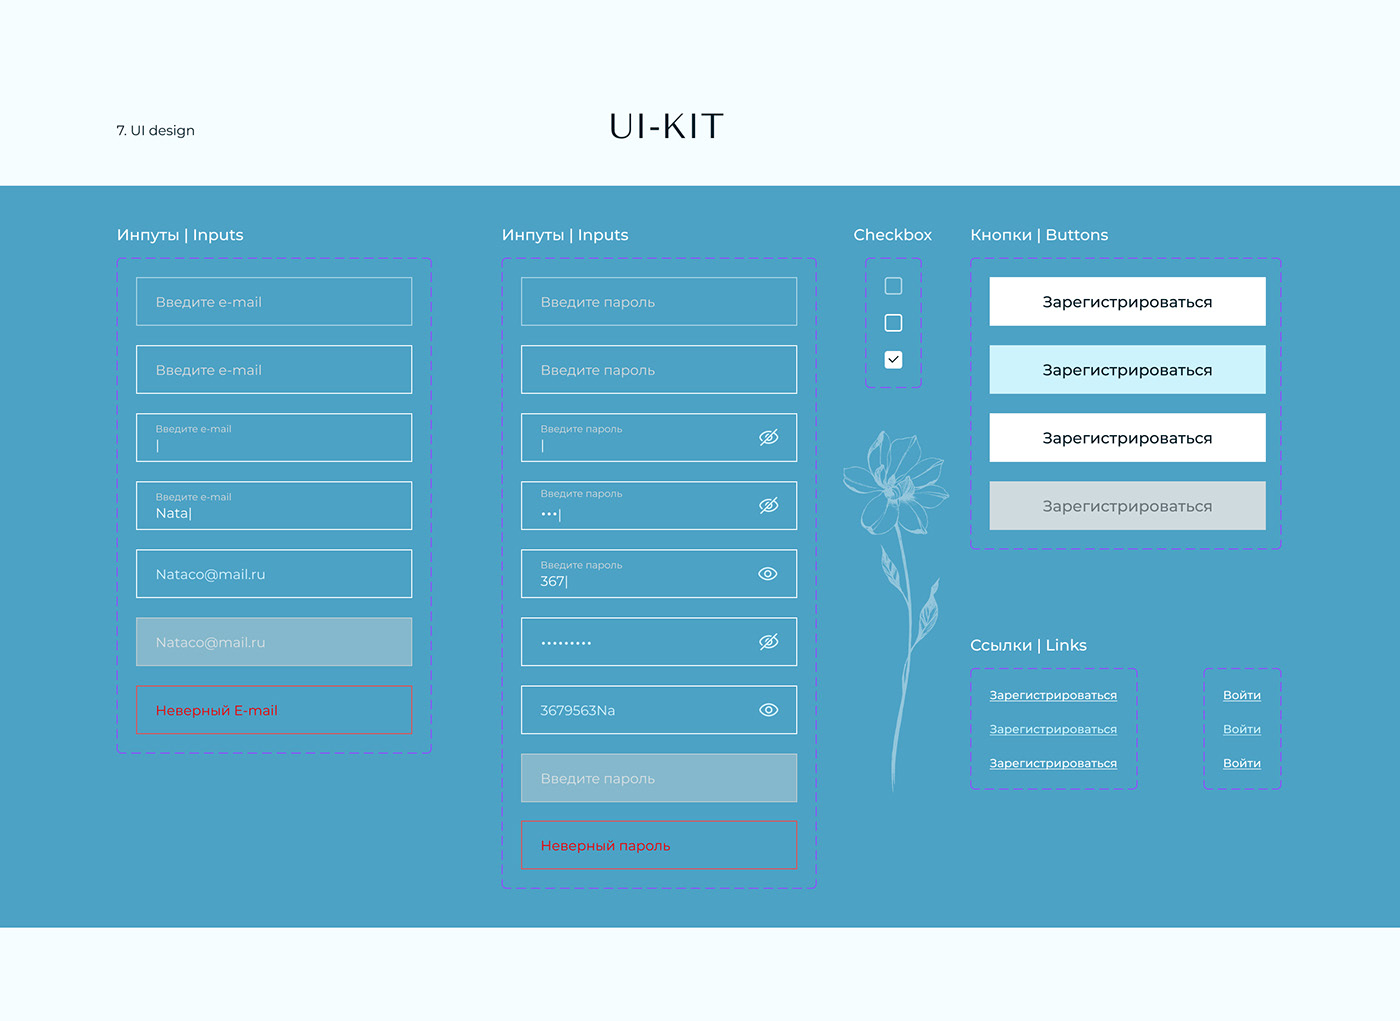 Log In login registration sign up ui design ui-kit UI/UX Web Design  форма входа форма регистрации